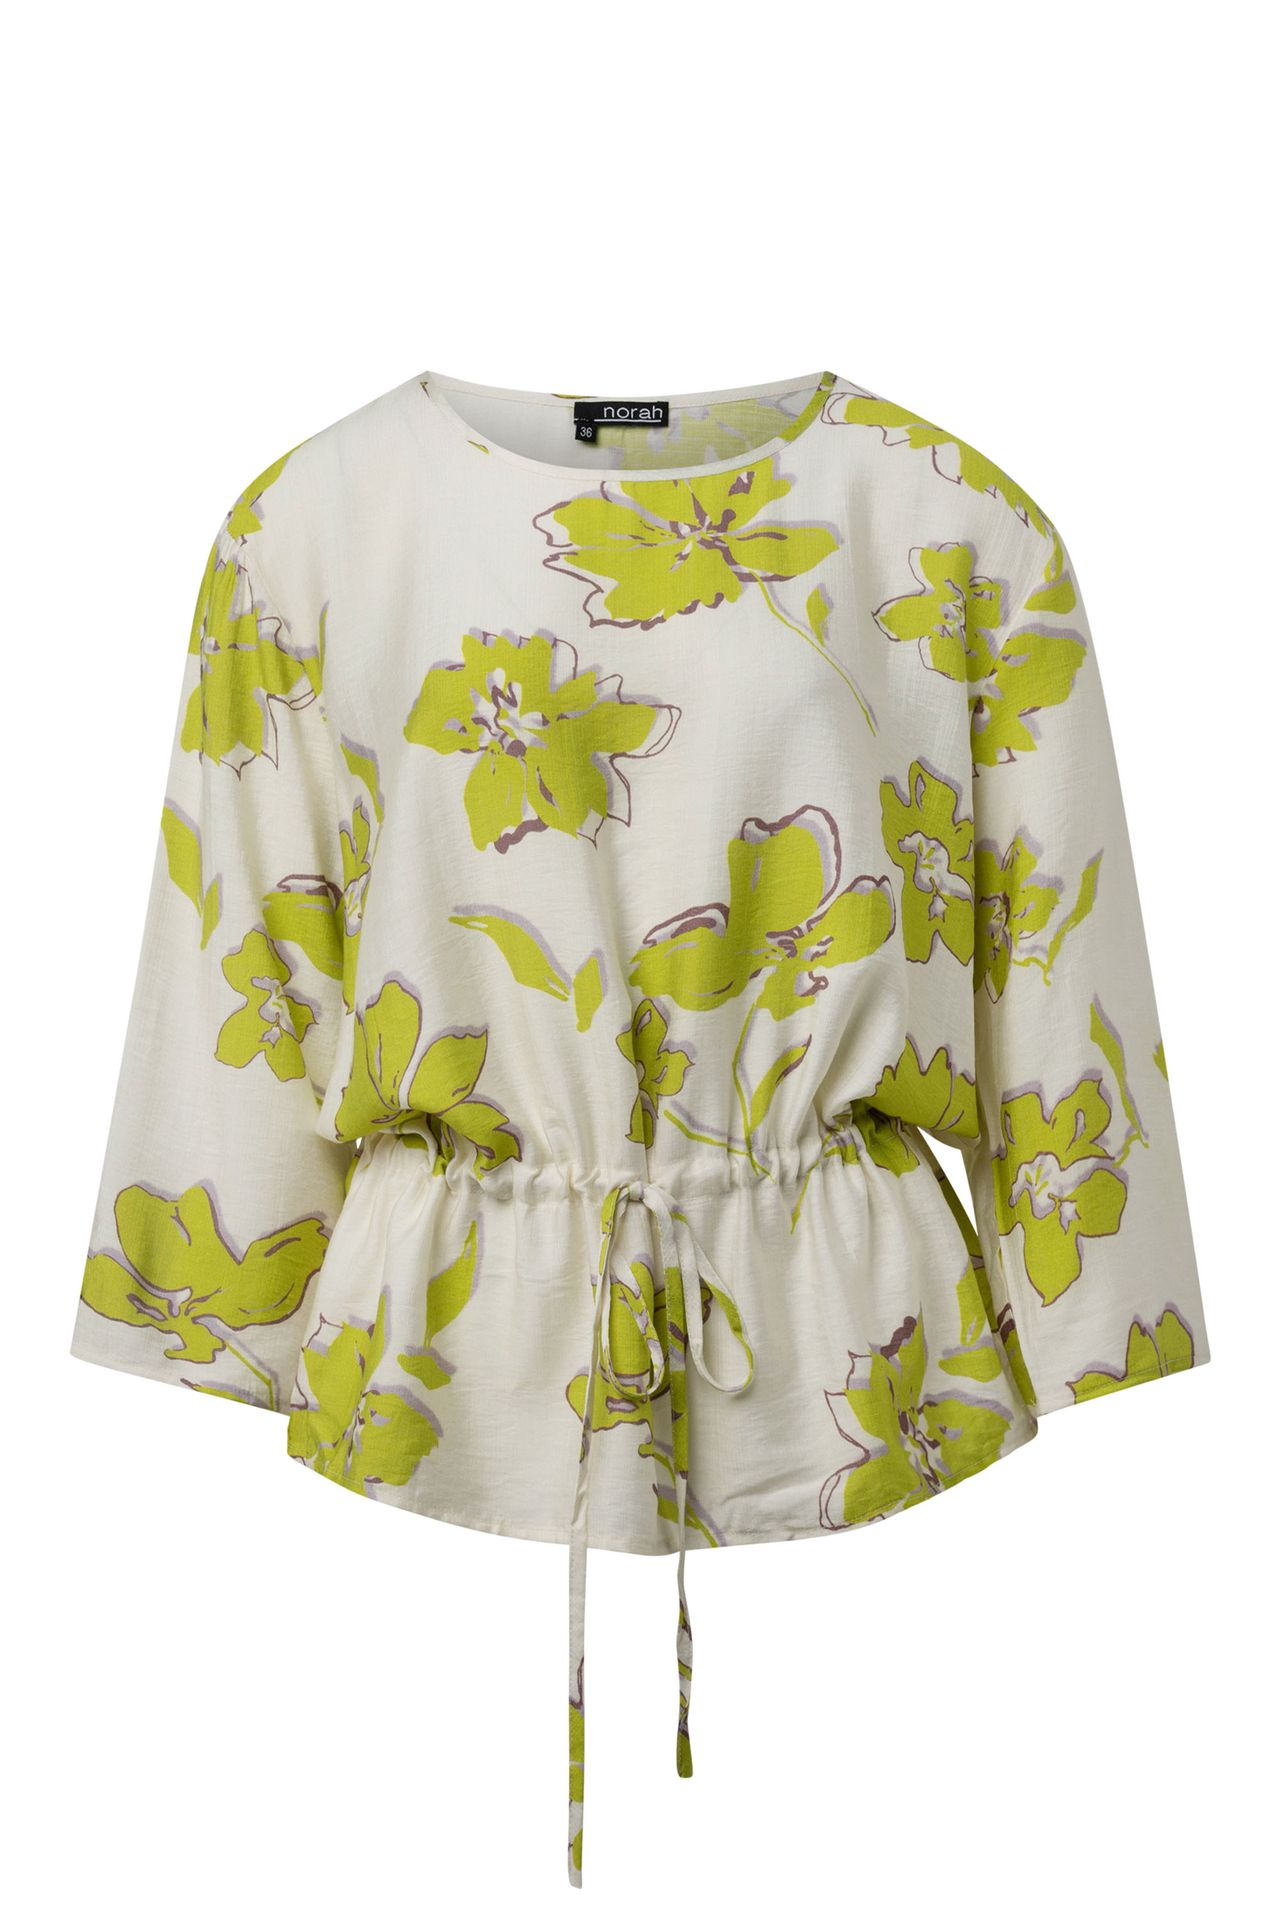 Norah Bloemen blouse lime multicolor 214834-501